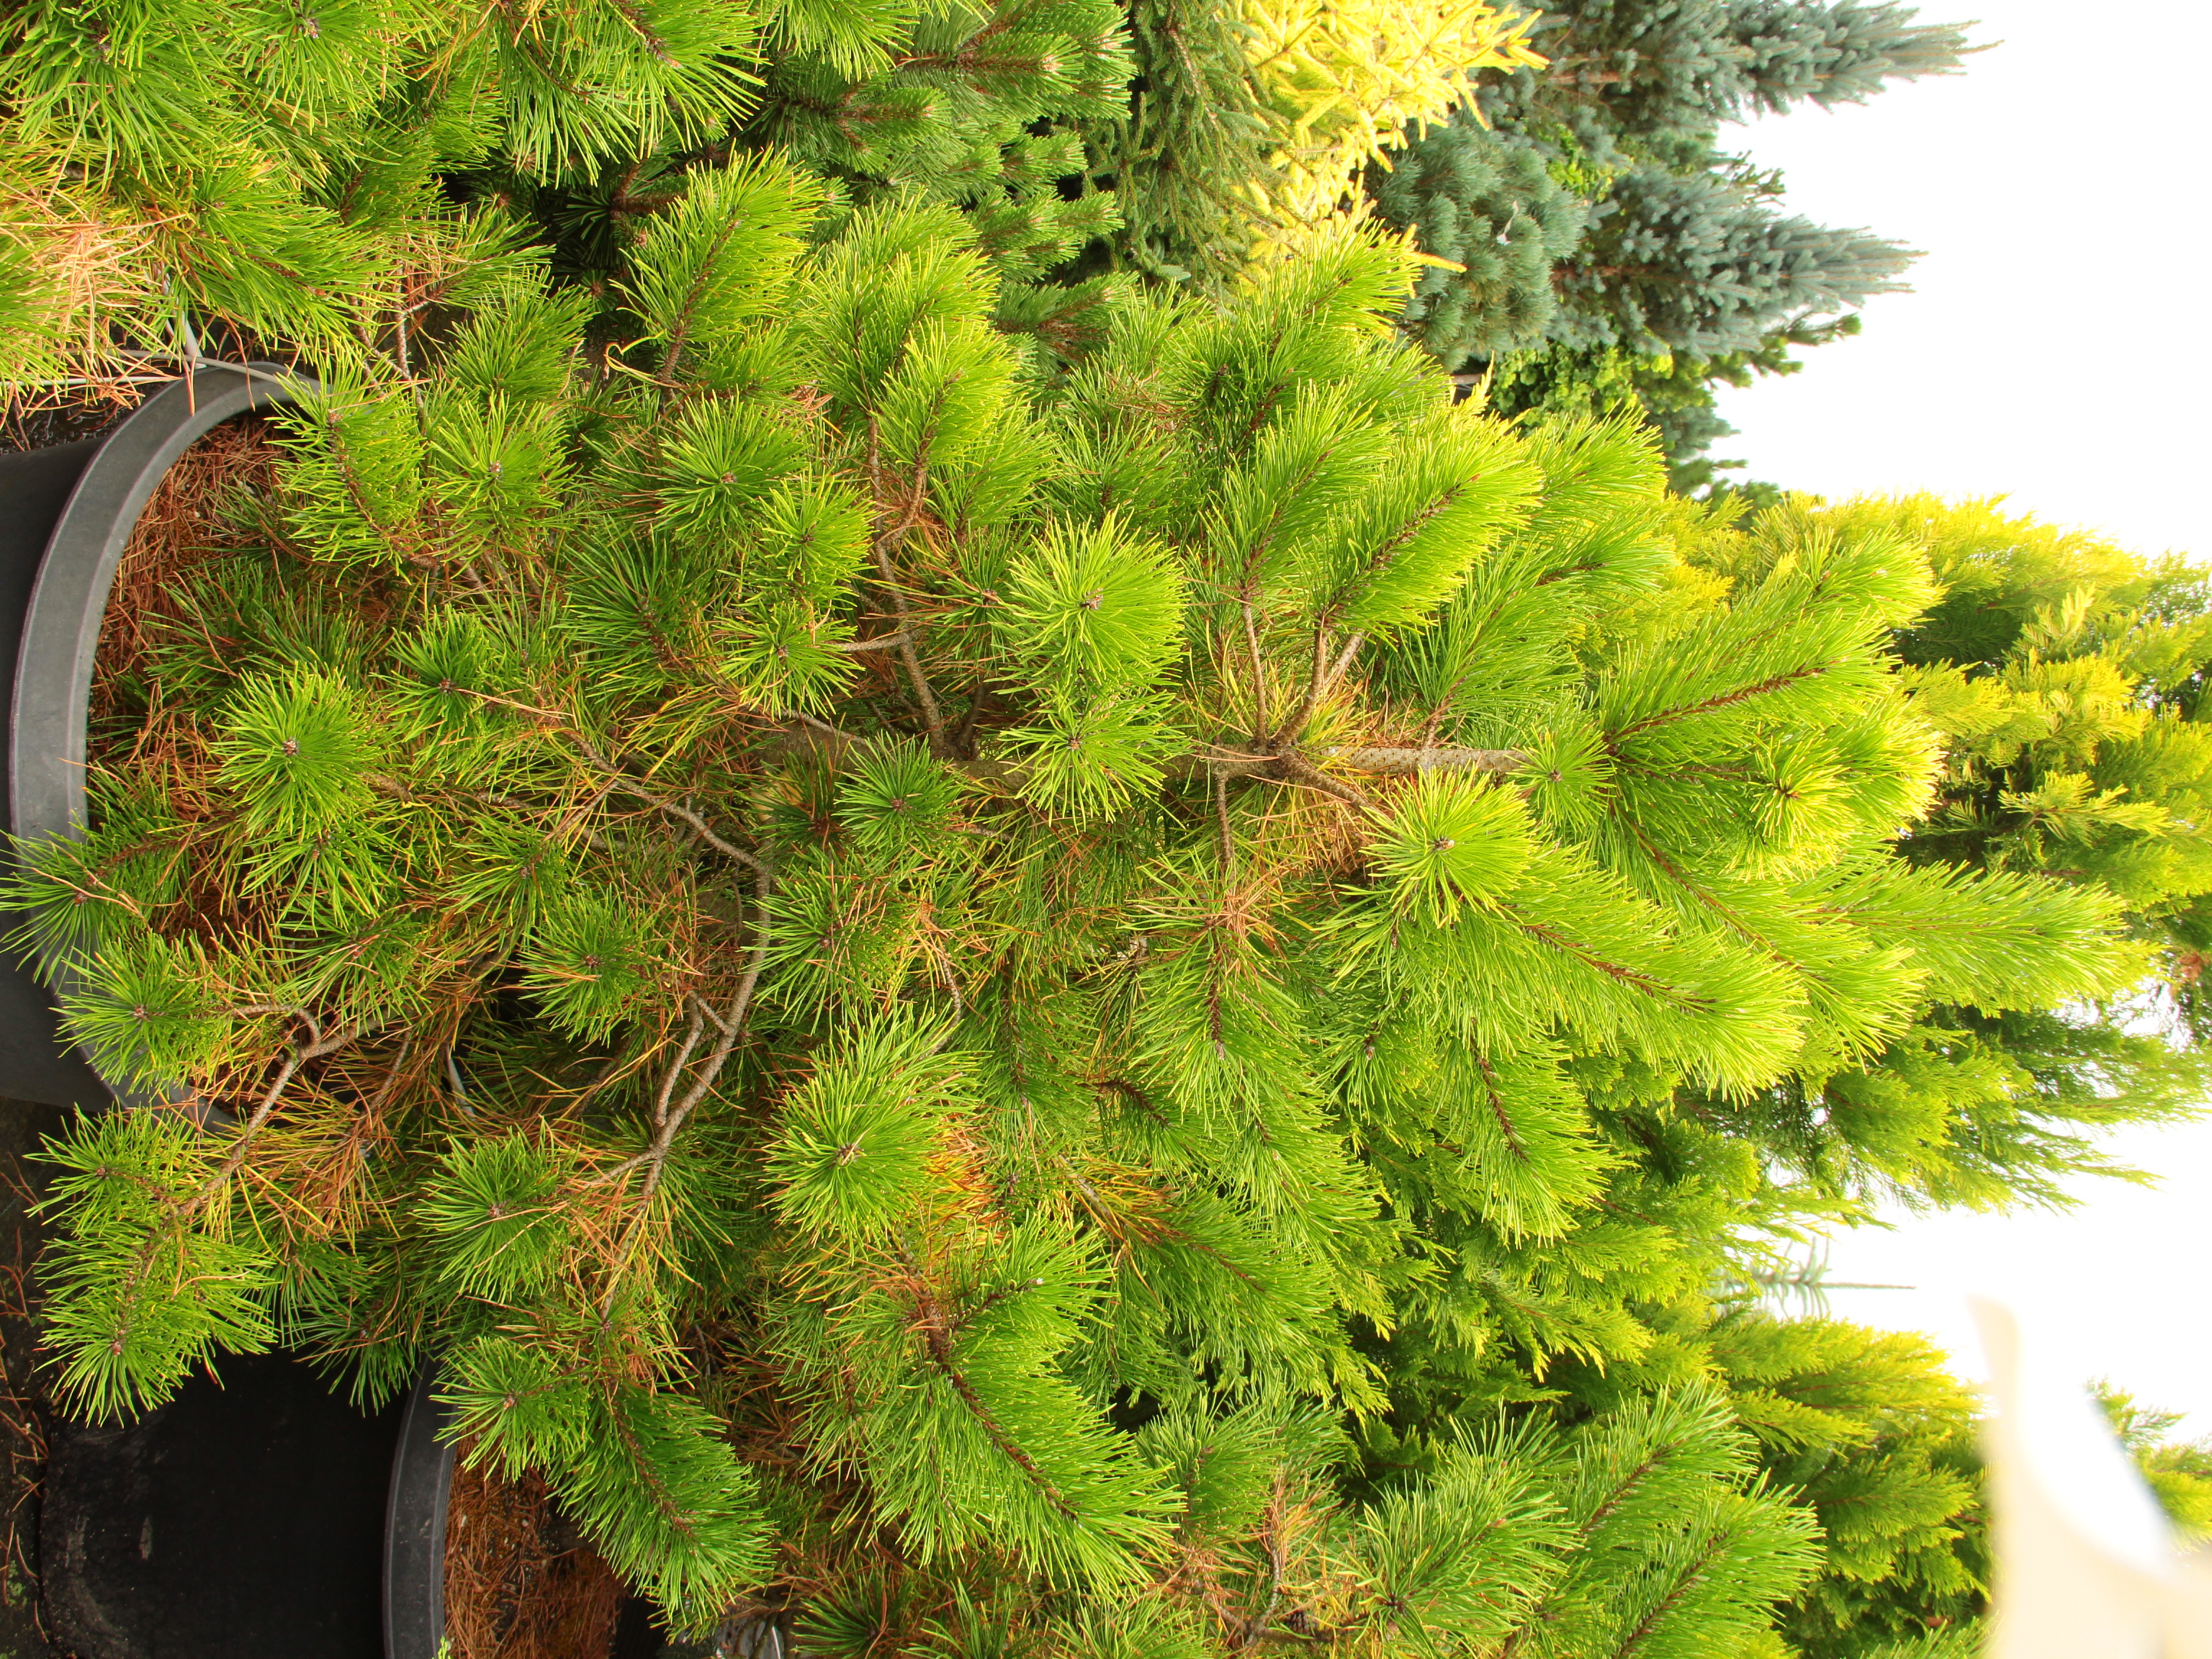 Pinus contorta var. latifolia ‘Chief Joseph’